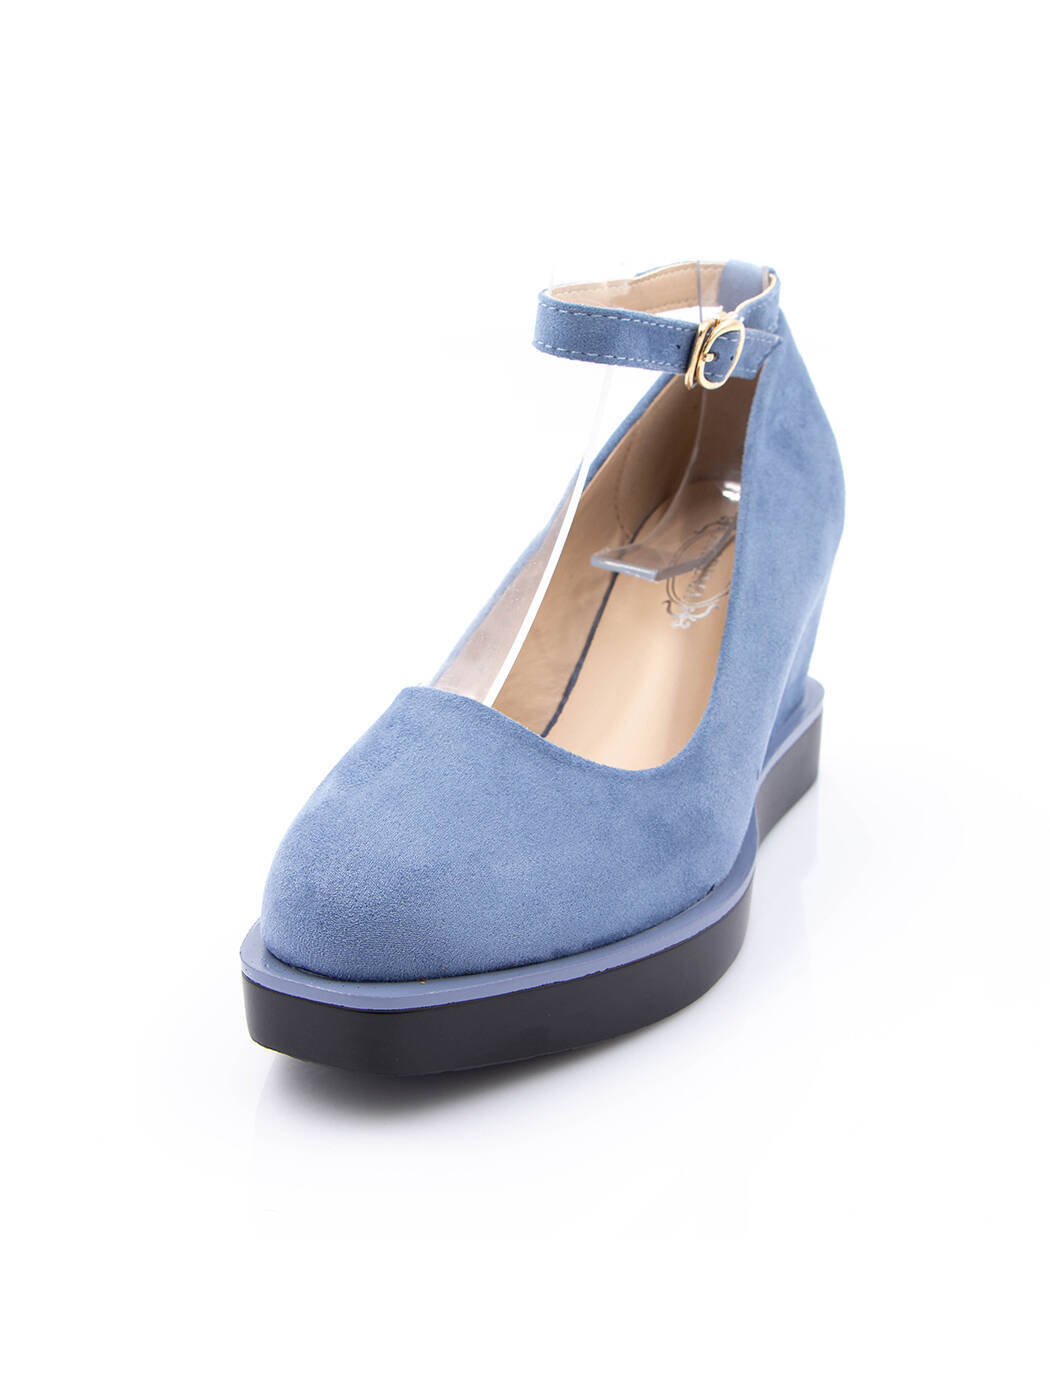 Туфли женские голубые экозамша каблук устойчивый демисезон от производителя 5M вид 0